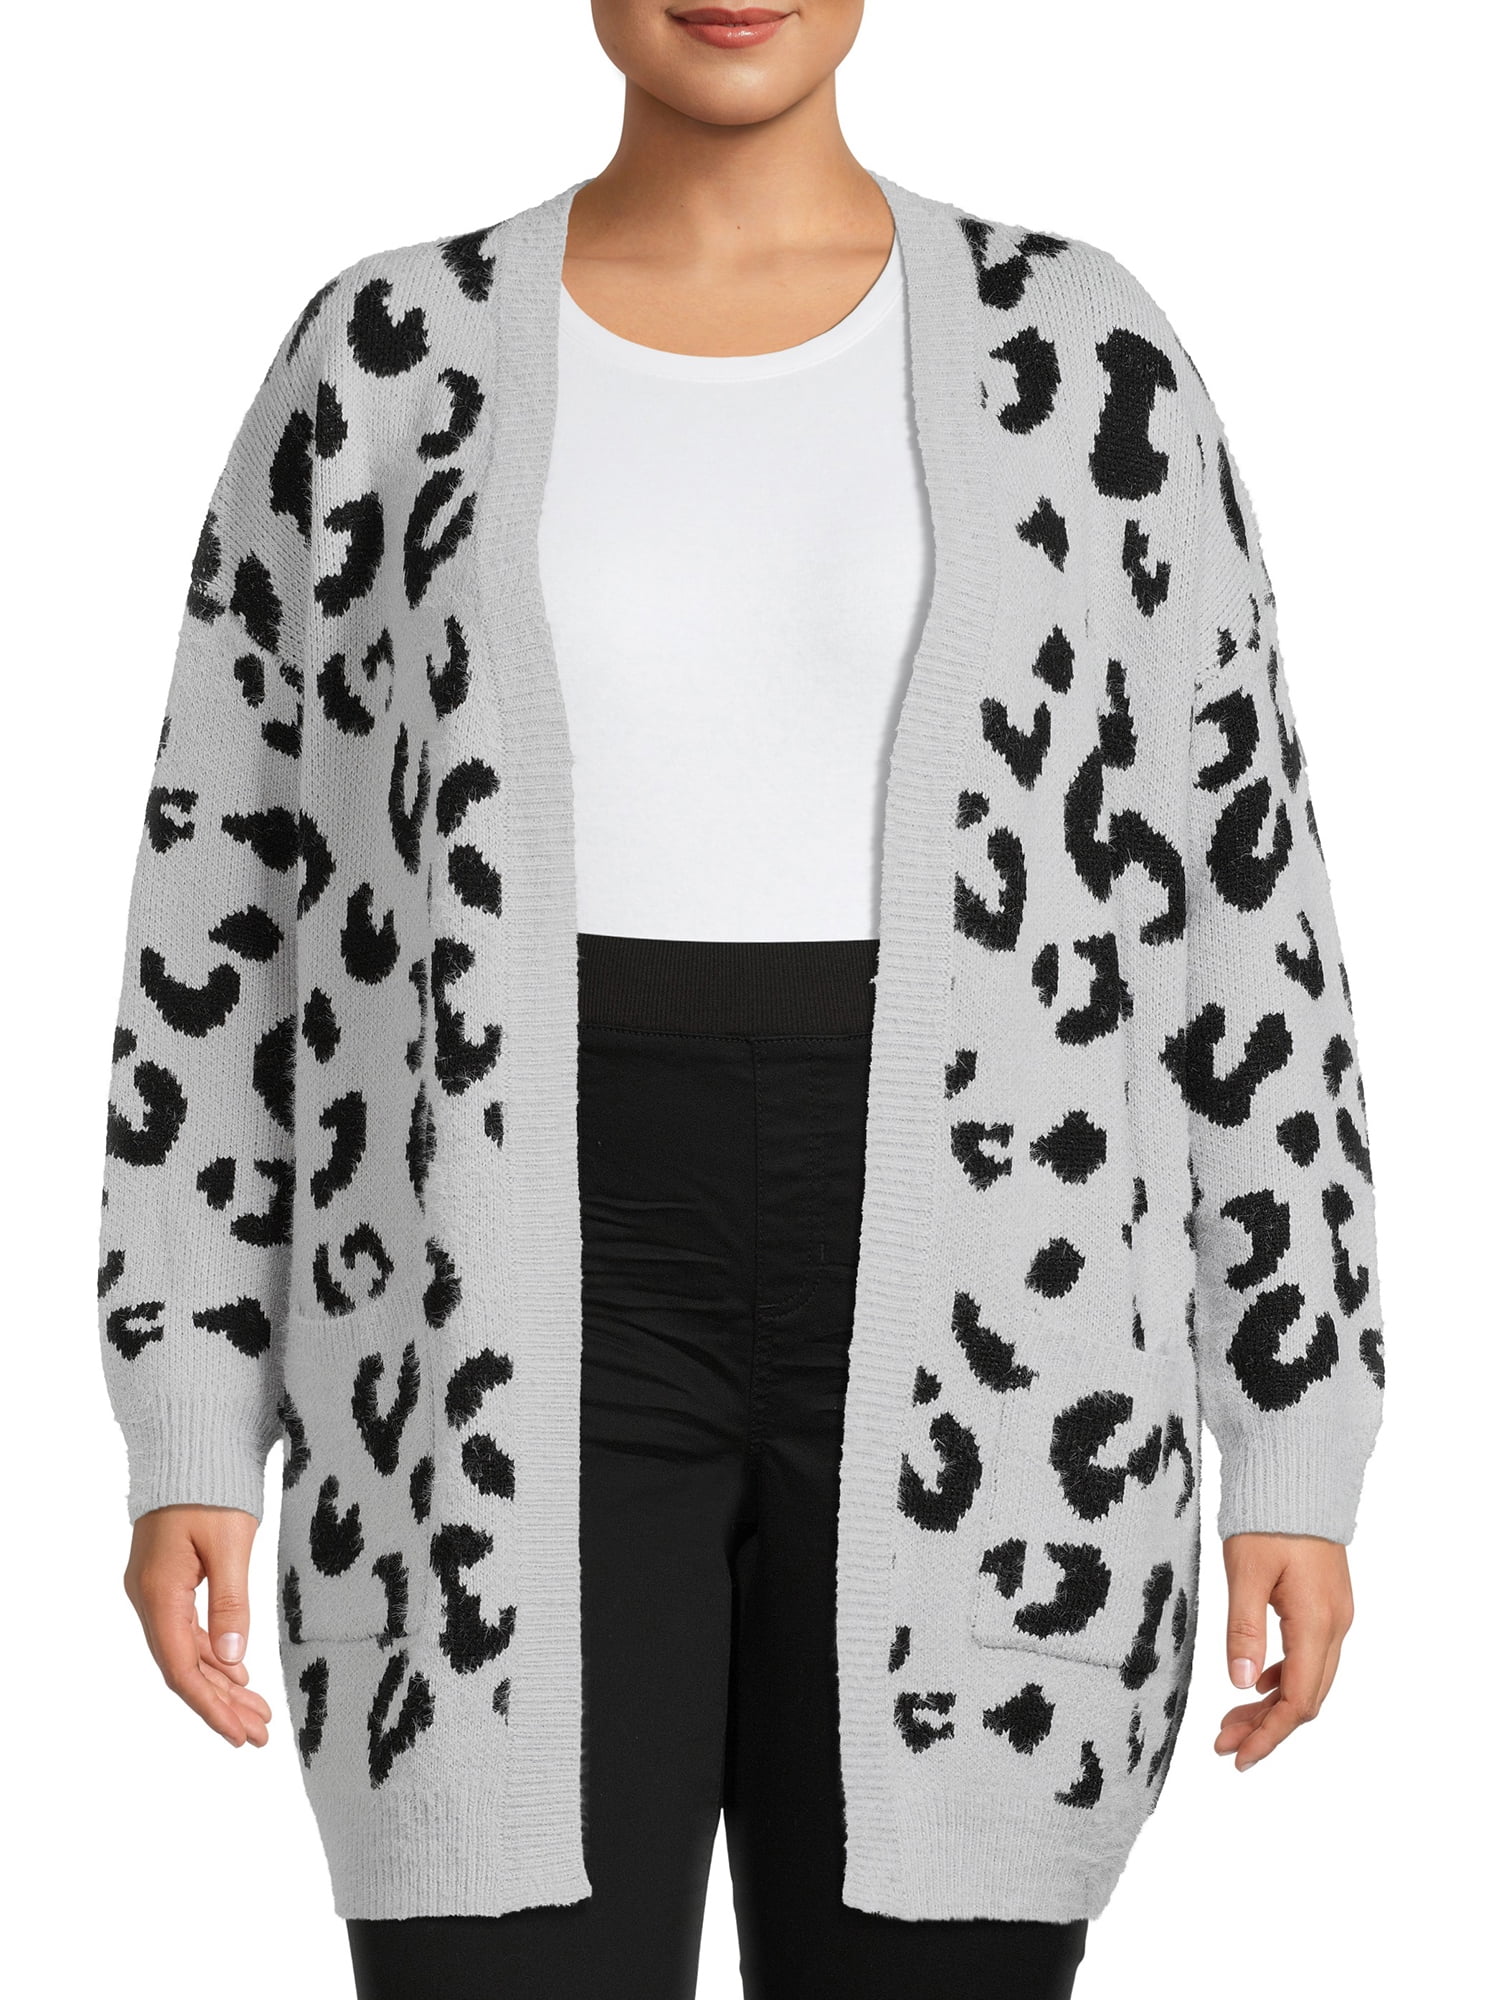 Dreamers by Women's Size Leopard Print Cardigan - Walmart.com